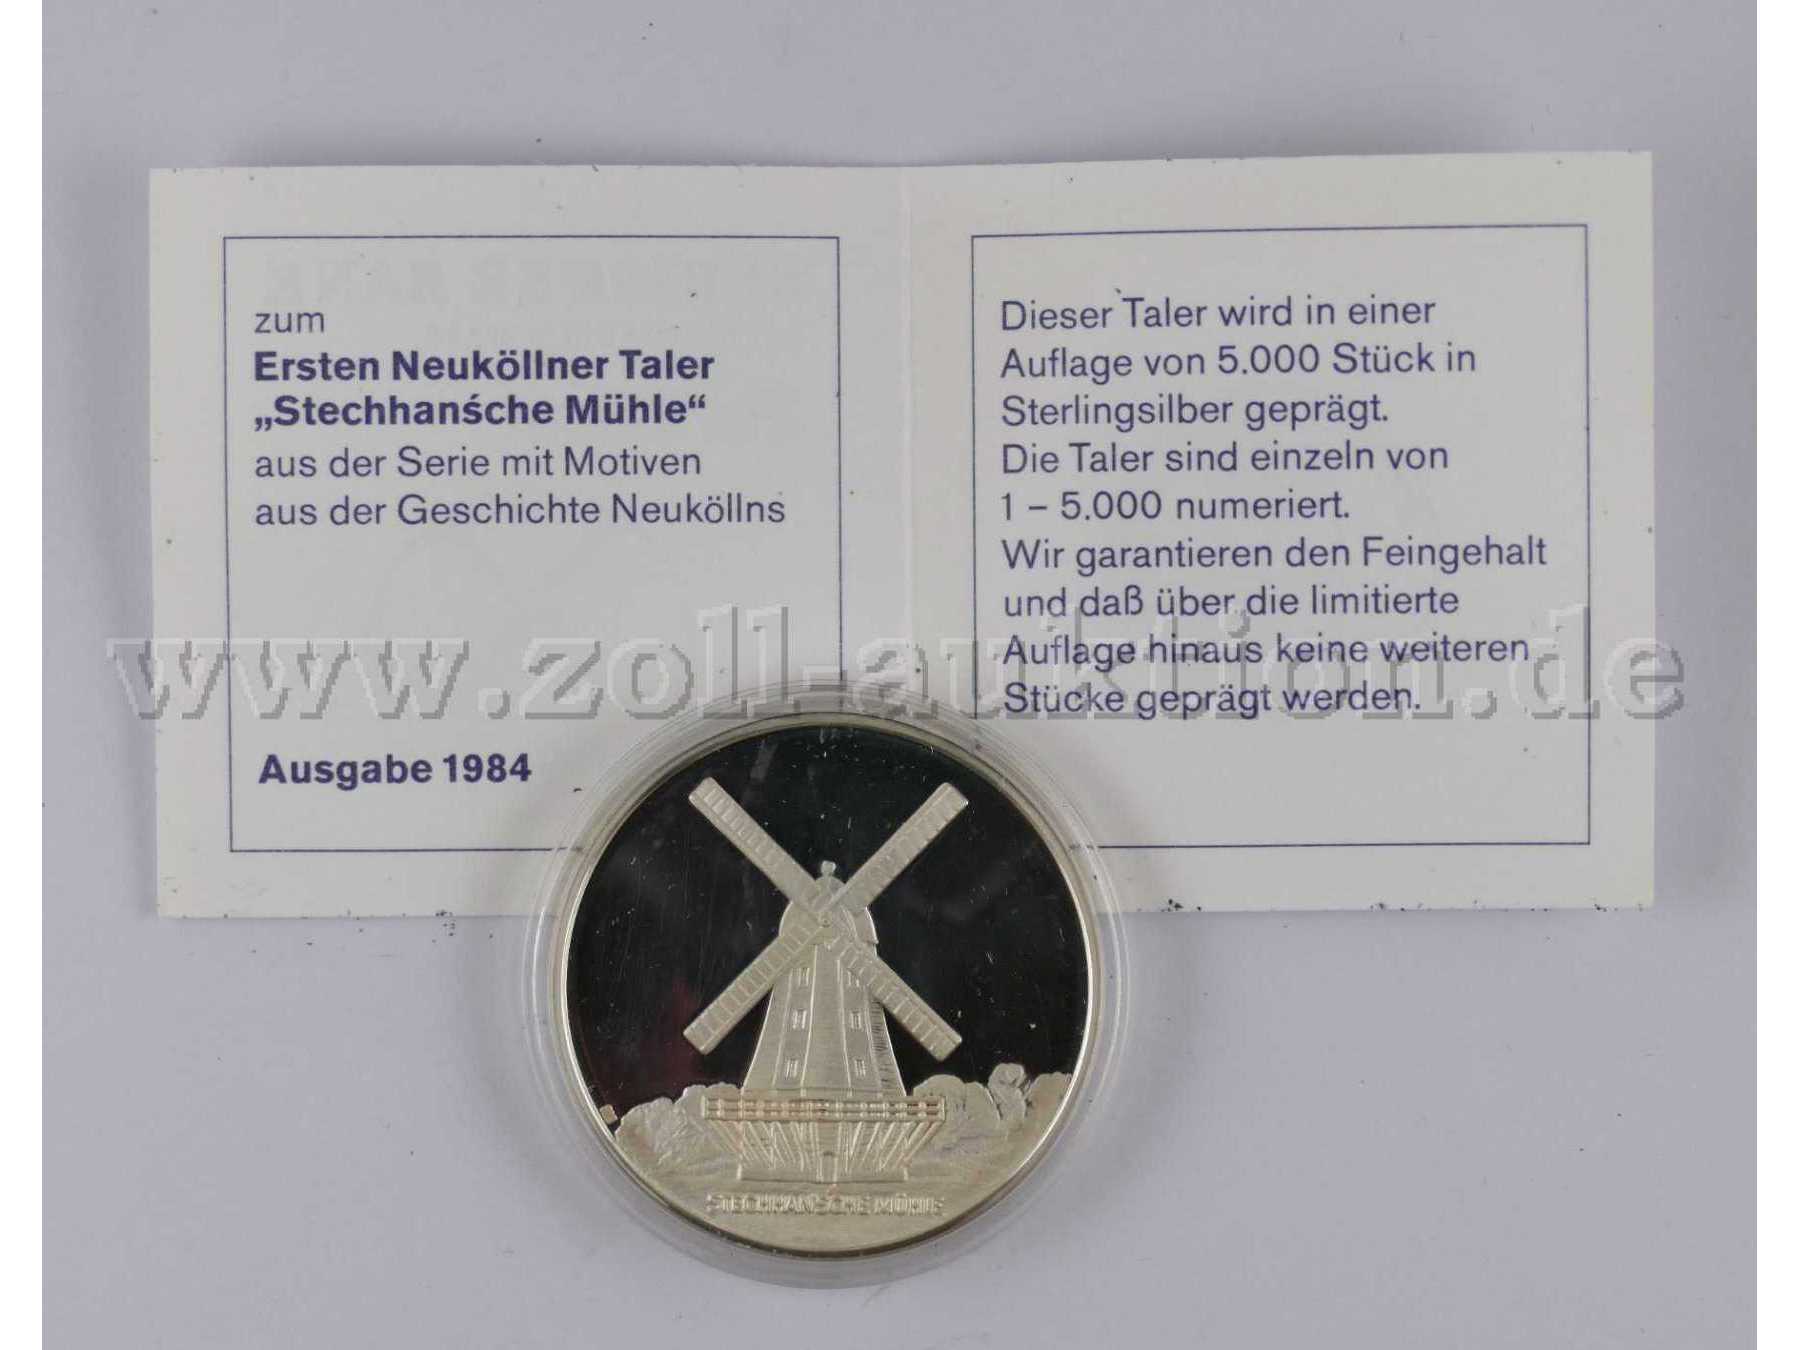 1 Silbertaler (925er) -Stechhansche Mühle Berlin-Neukölln- von 1984 mit Zertifikat